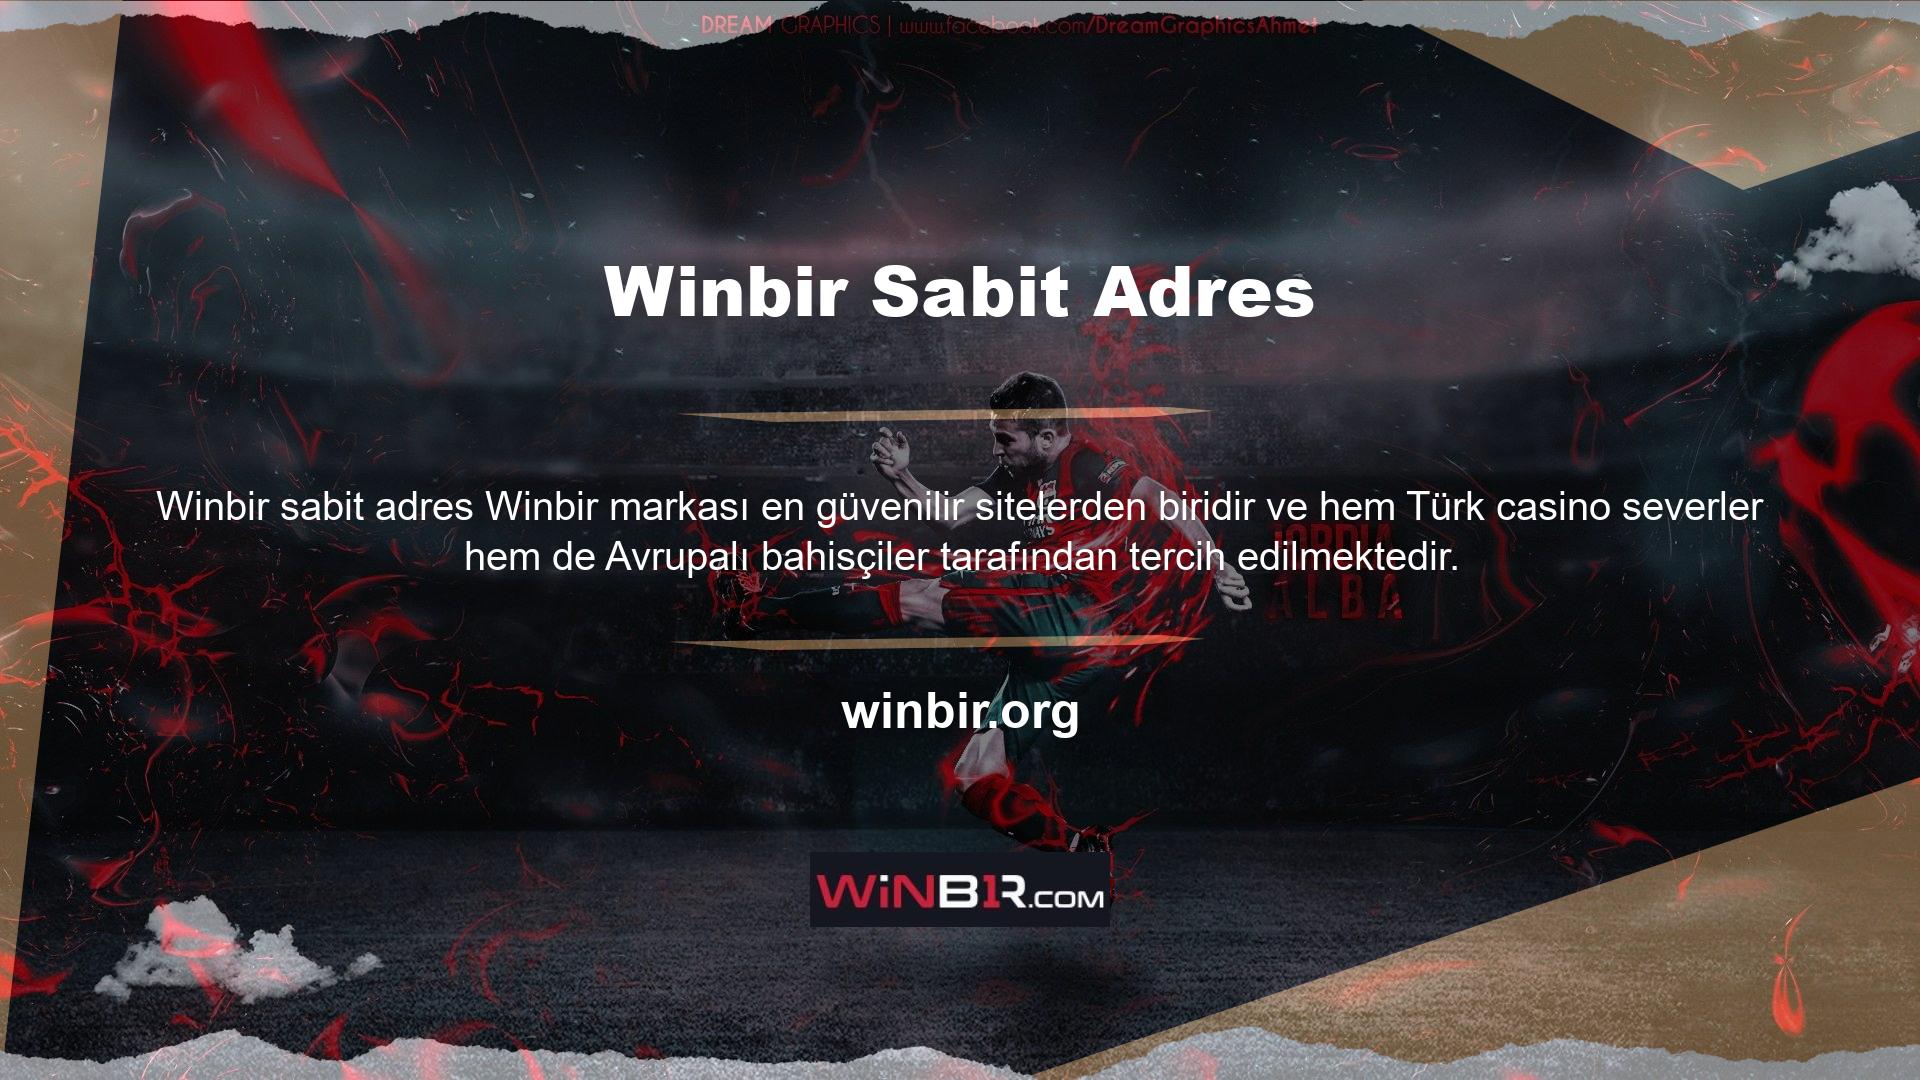 Kalıcı bir reklam adresi olan Winbir, Avrupa'da ünlü bir yer izlenimi veriyor